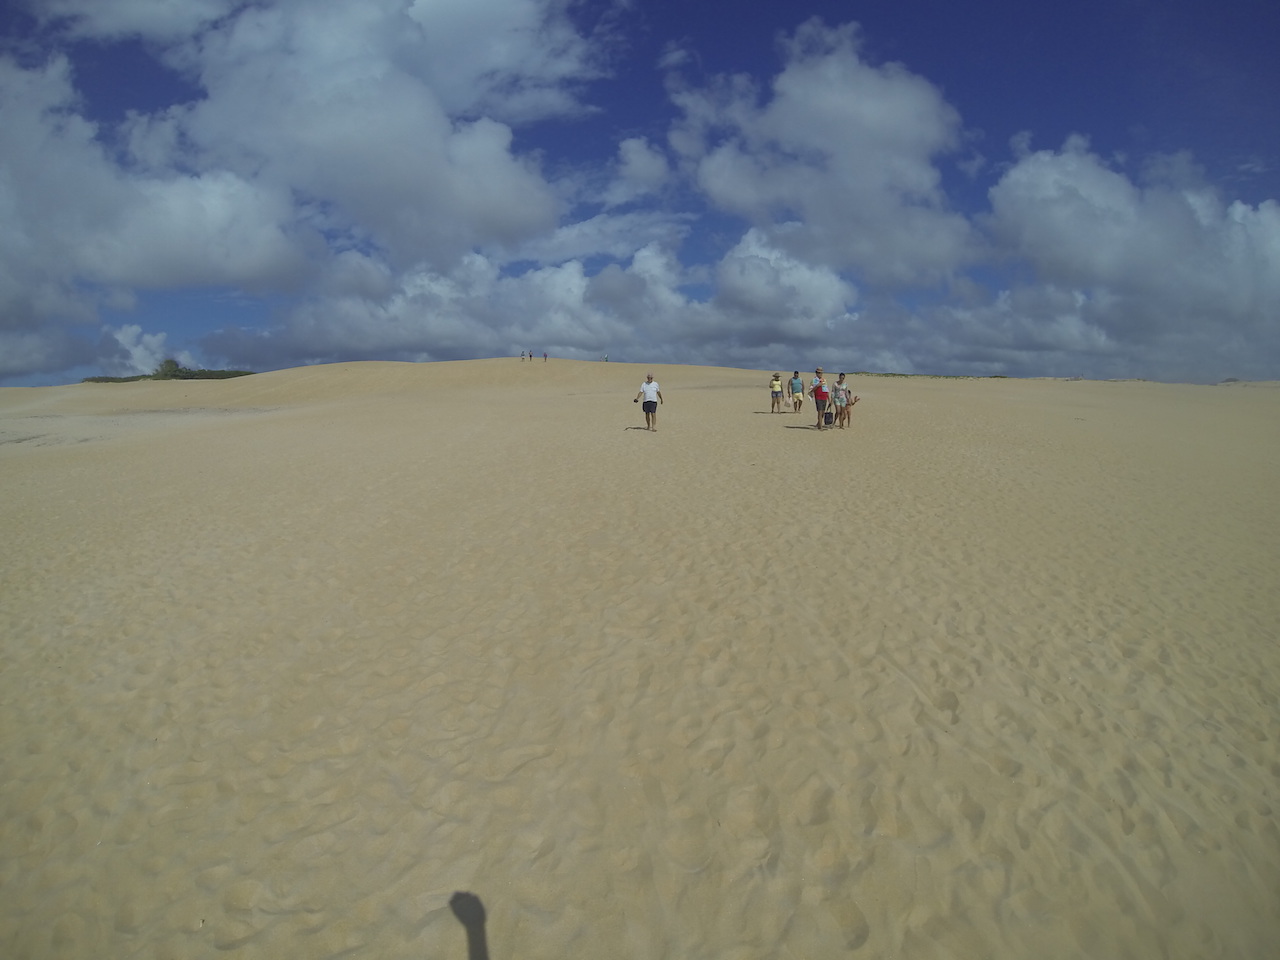 Conceição da Barra e Itaúnas: praias calmas e dunas brancas